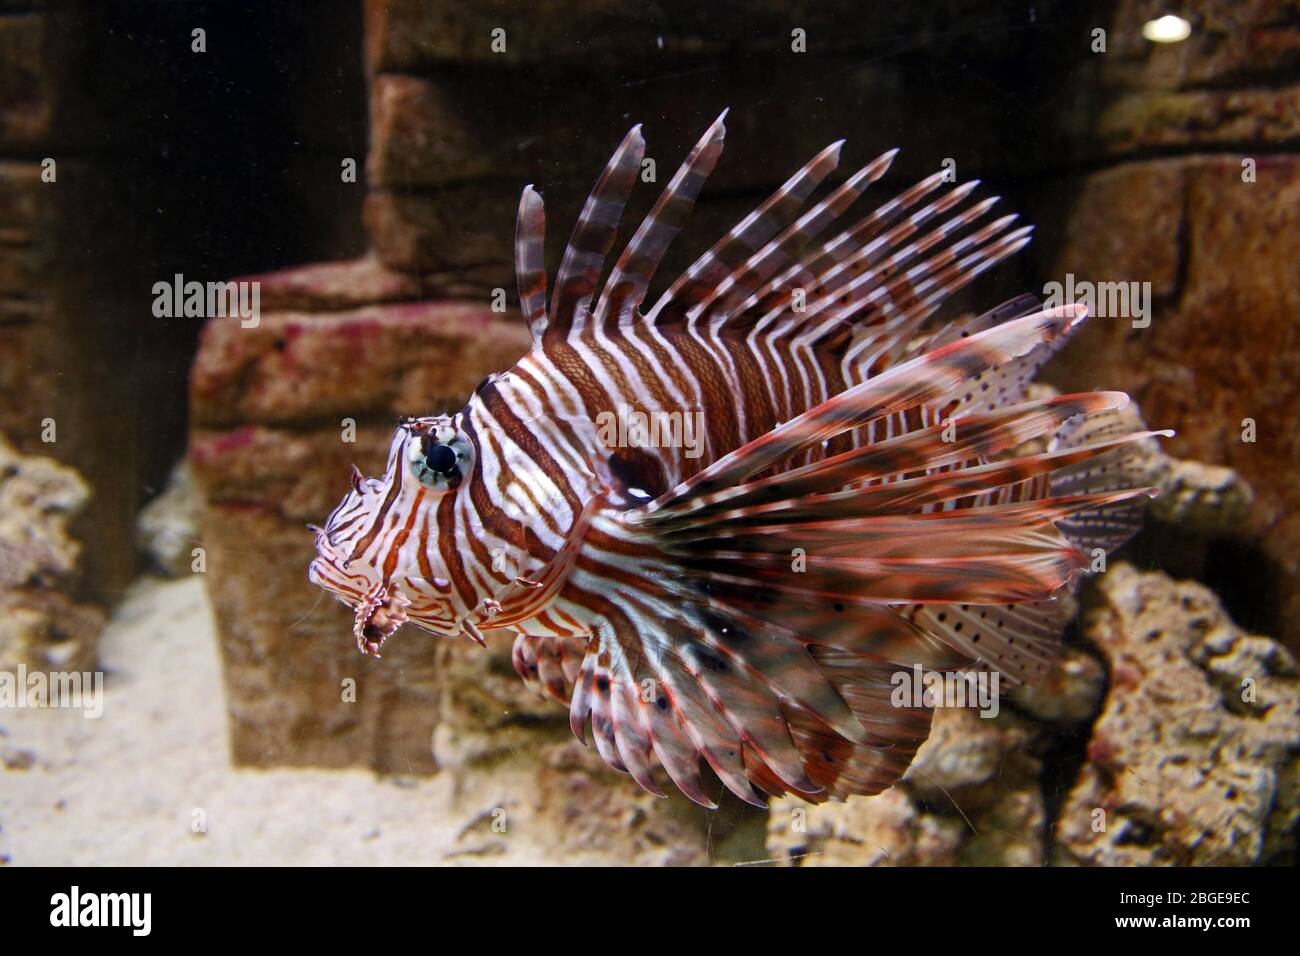 Pesce leone (Pterois) - animale prigioniero in acquario. Buono da mangiare, ma le spine sono velenose. Aka TurkeyFish. Farfalla COD. Pinne di piume. Foto Stock